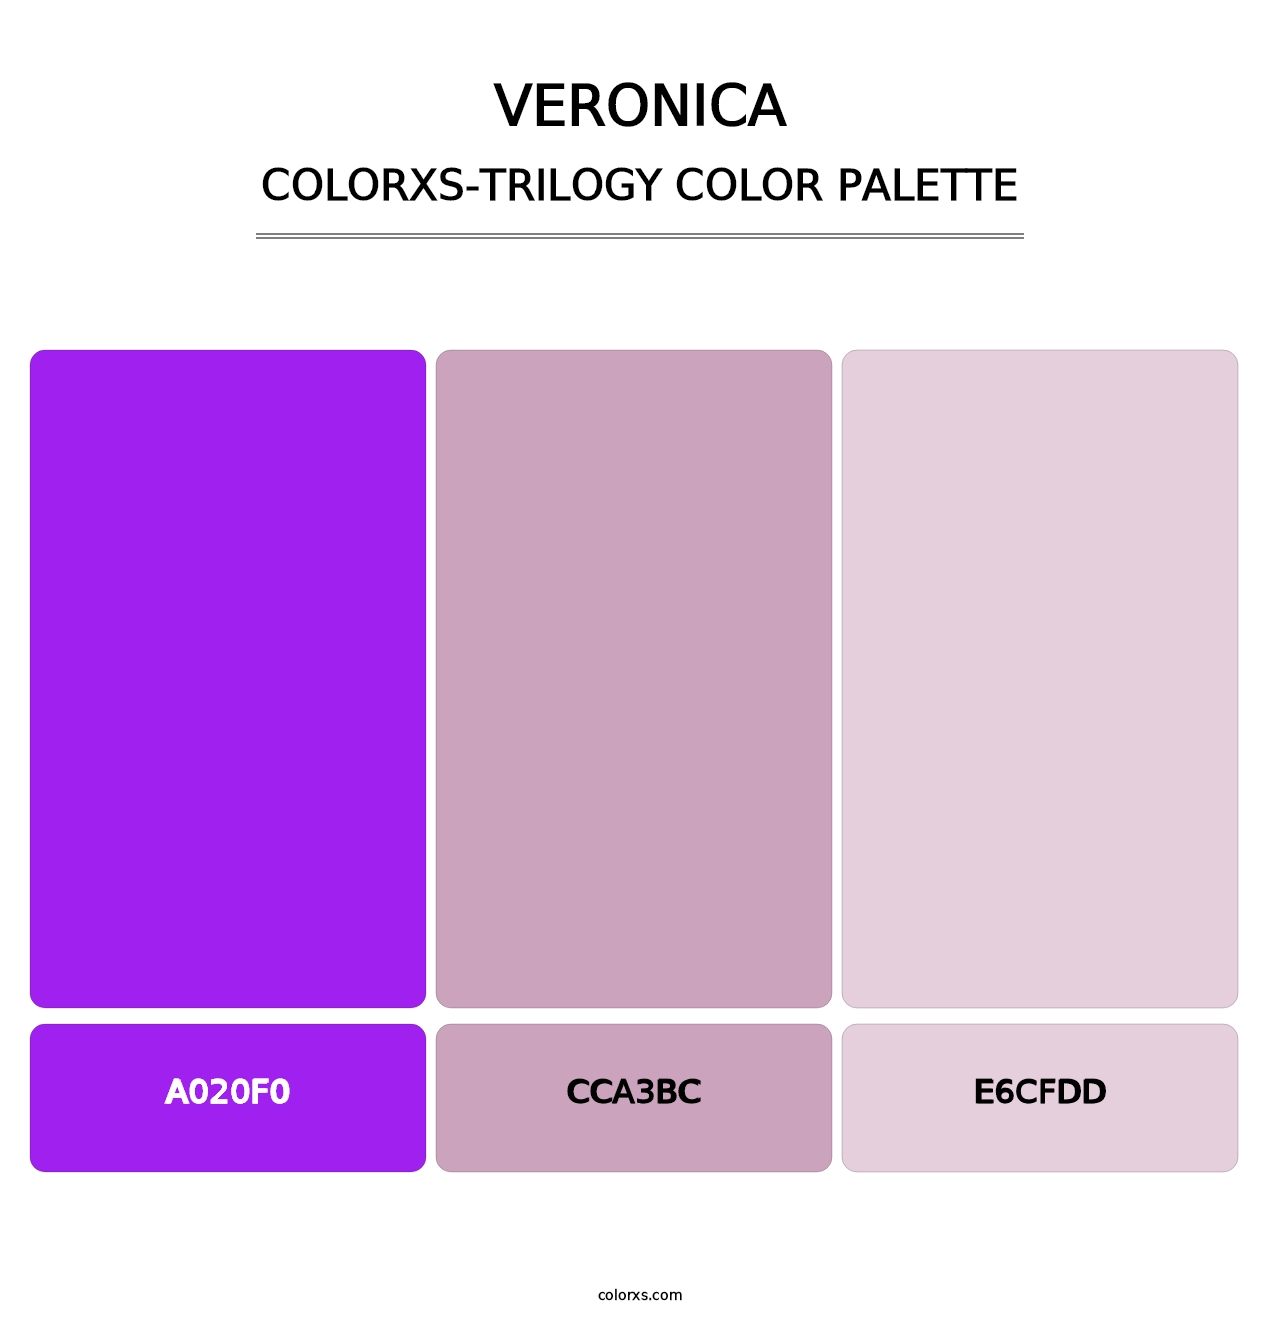 Veronica - Colorxs Trilogy Palette